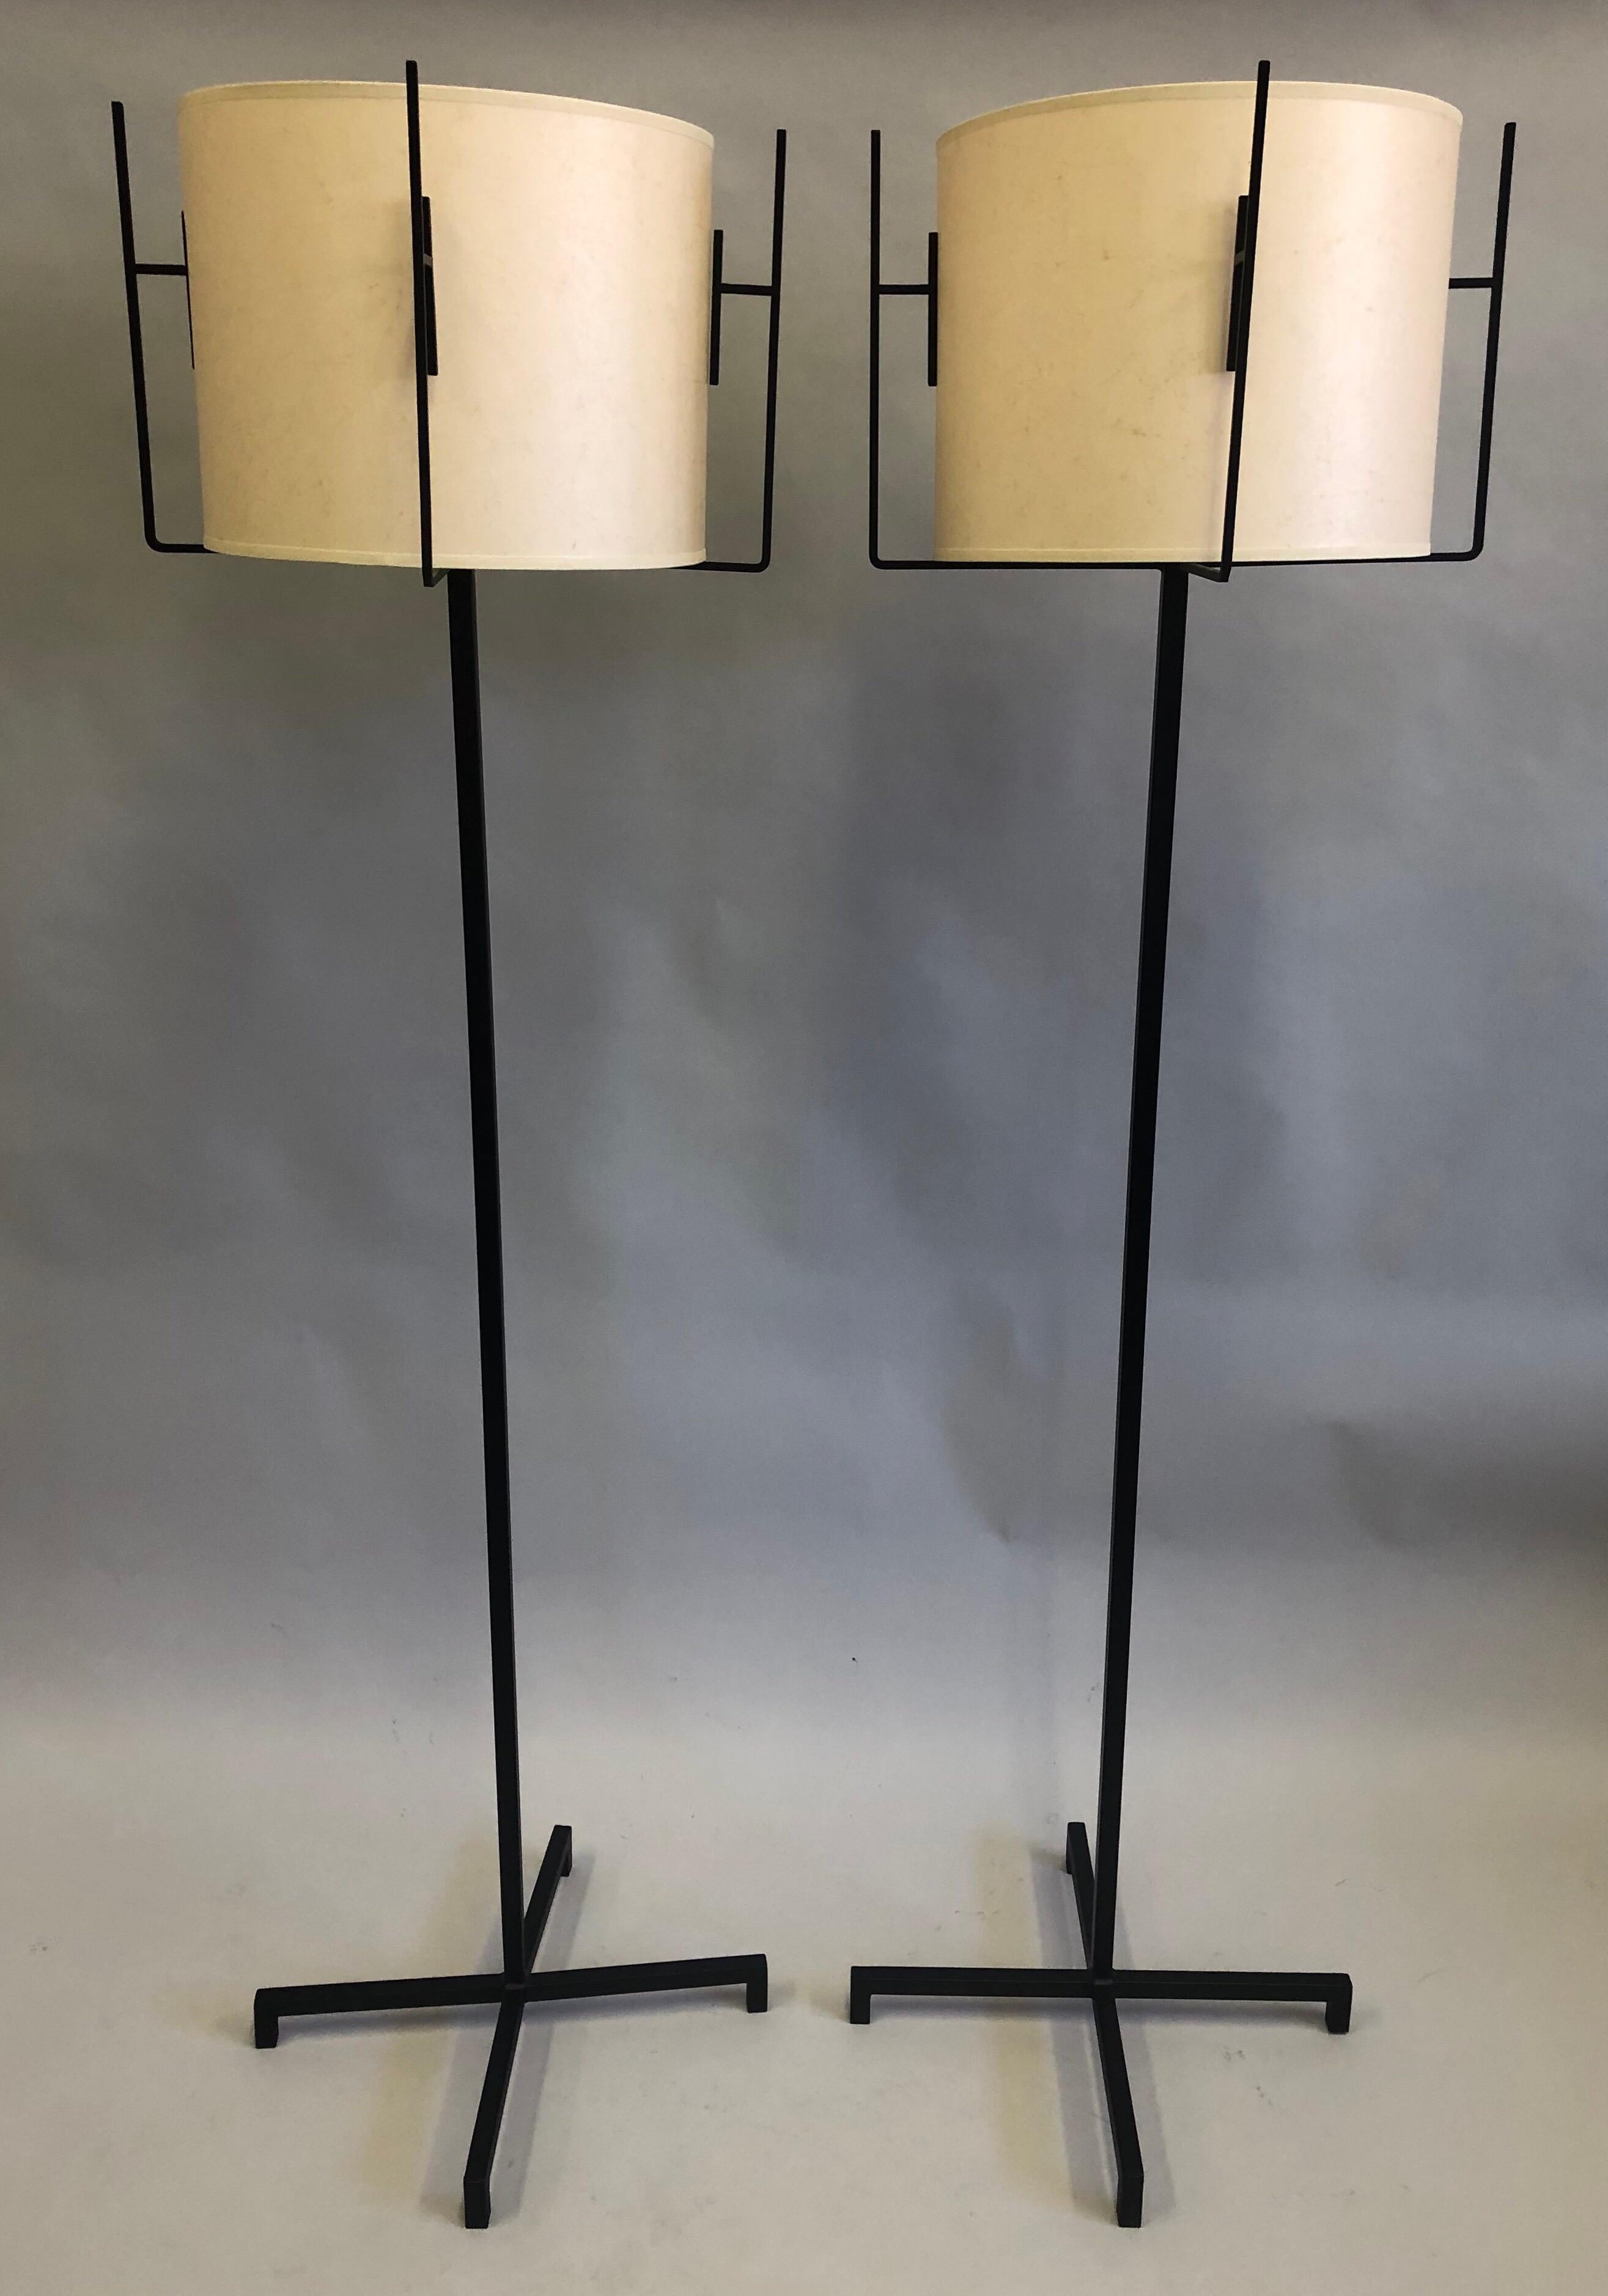 Paire de lampadaires en fer forgé de Jacques Adnet, datant du milieu du siècle dernier, avec abat-jour en papier parchemin. 

Les lampes sur pied sont composées d'une paire complémentaire, chaque base en fer étant conçue selon un motif en X et en